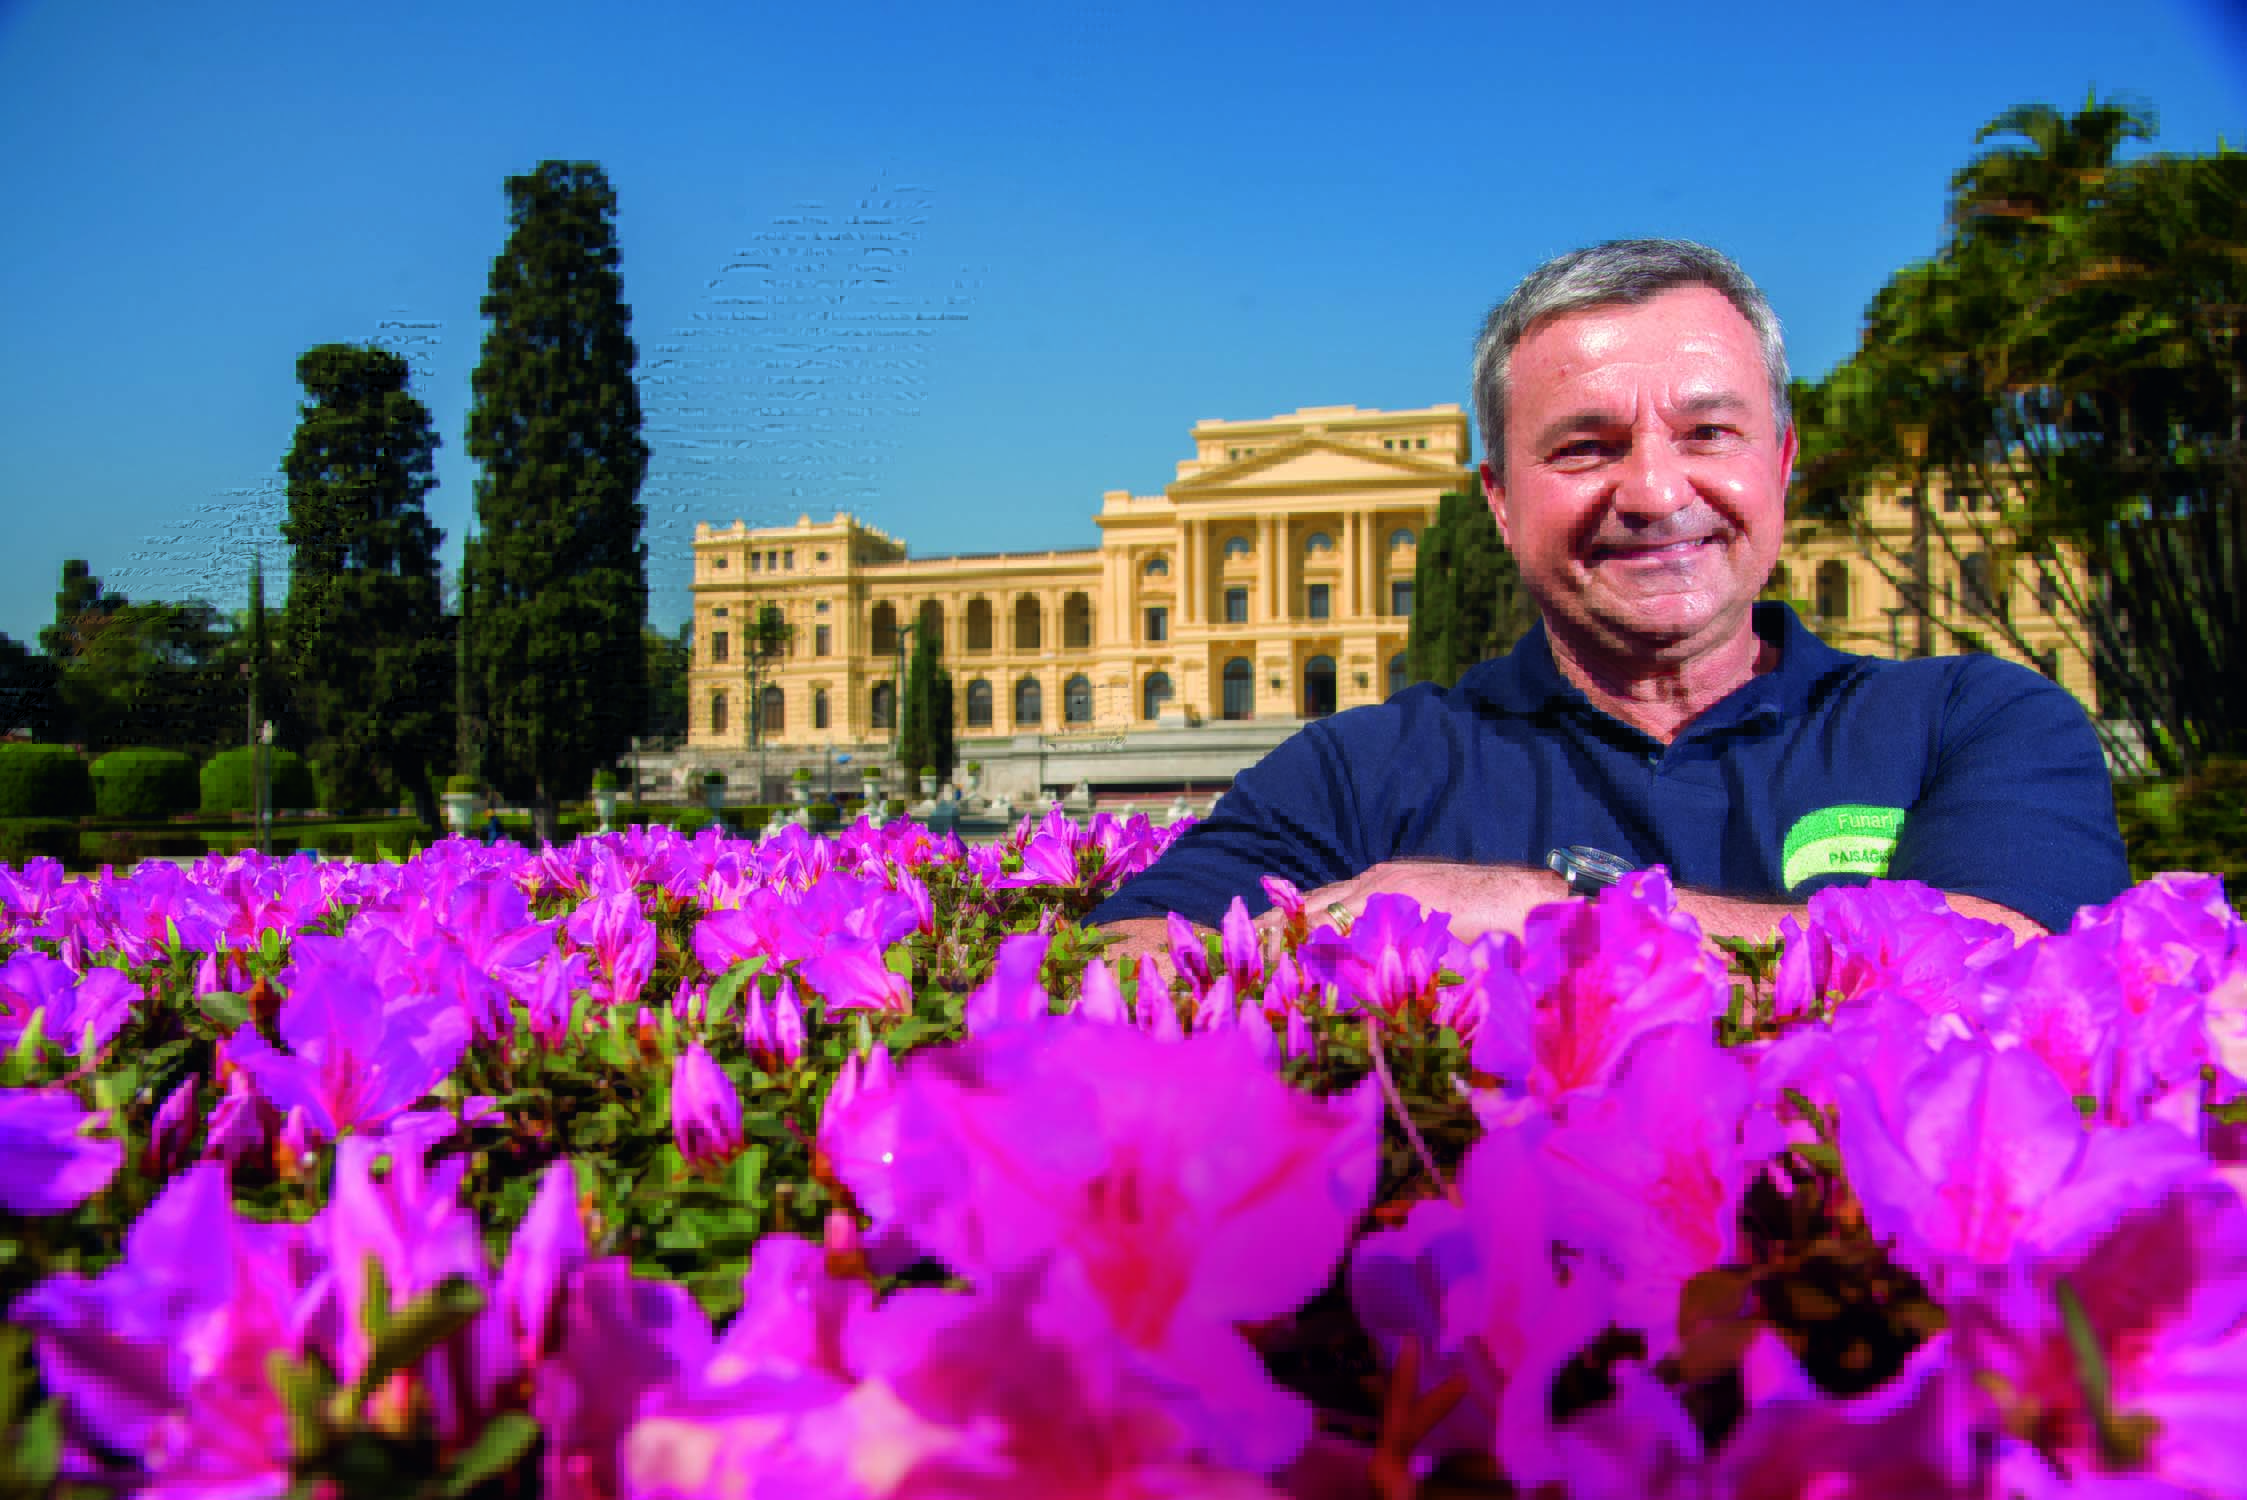 Eduardo Funari, paisagista do jardim do Museu do Ipiranga, posa atrás de rosas e com o Museu ao fundo.